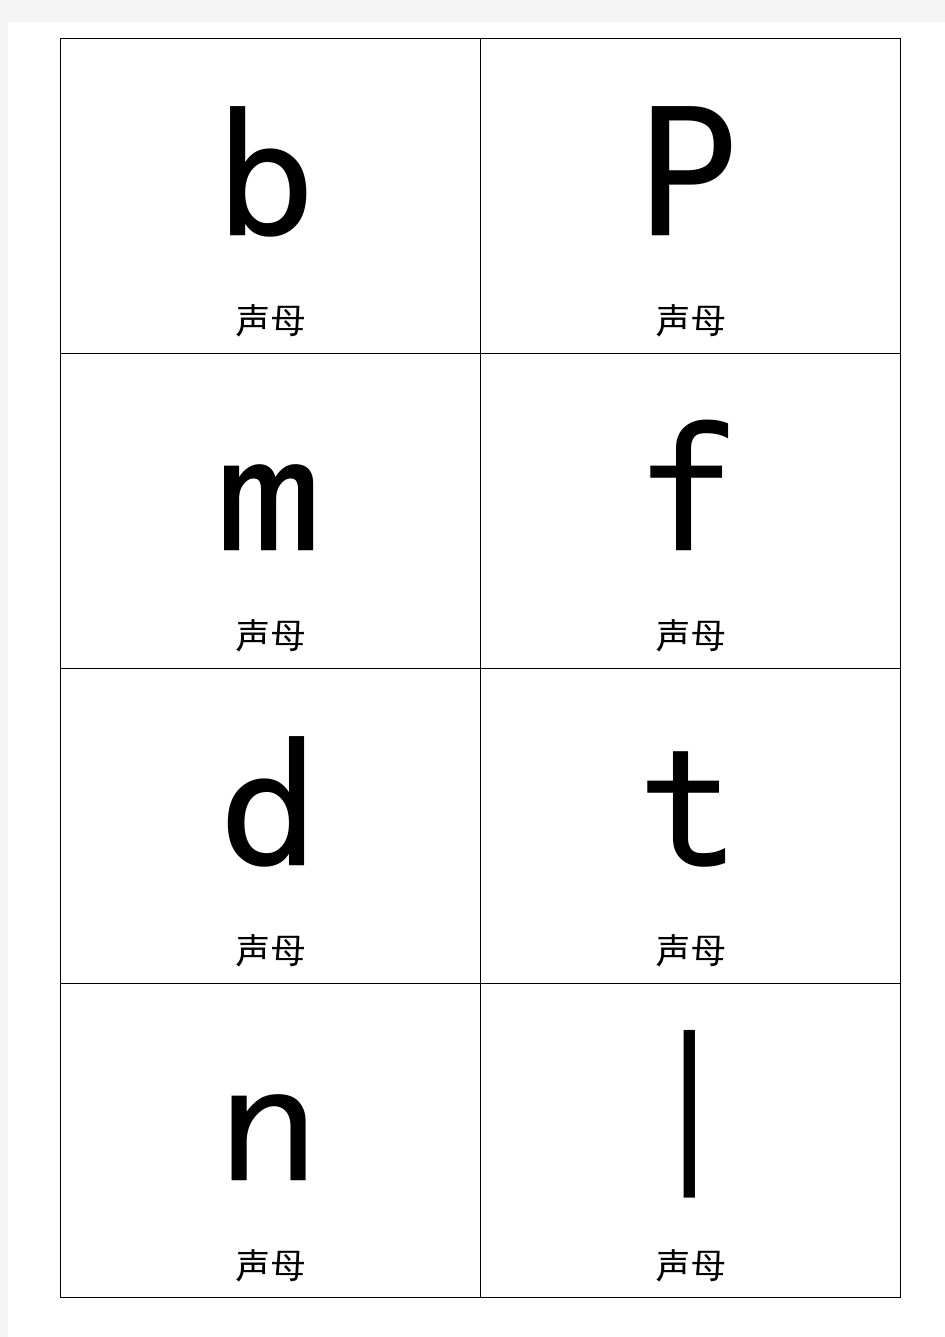 2020小学语文一年级汉语拼音卡片打印版(A4纸拼音卡片)